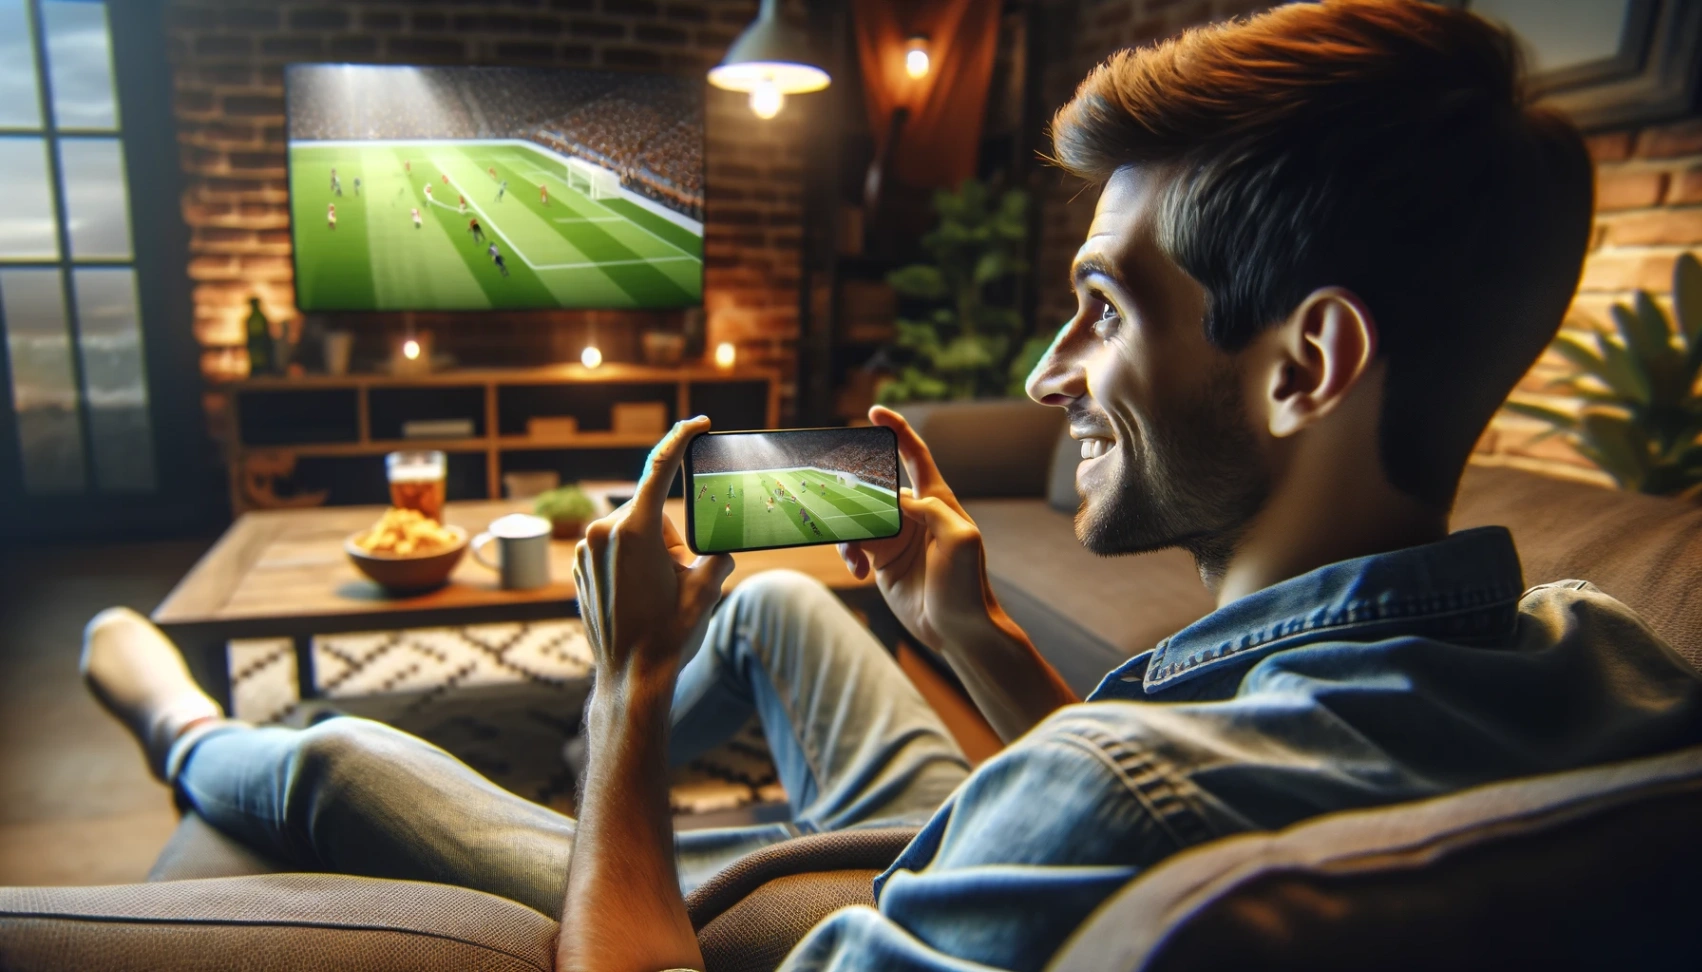 אפליקציה לצפייה בכדורגל באינטרנט - למדו איך להוריד [WW]